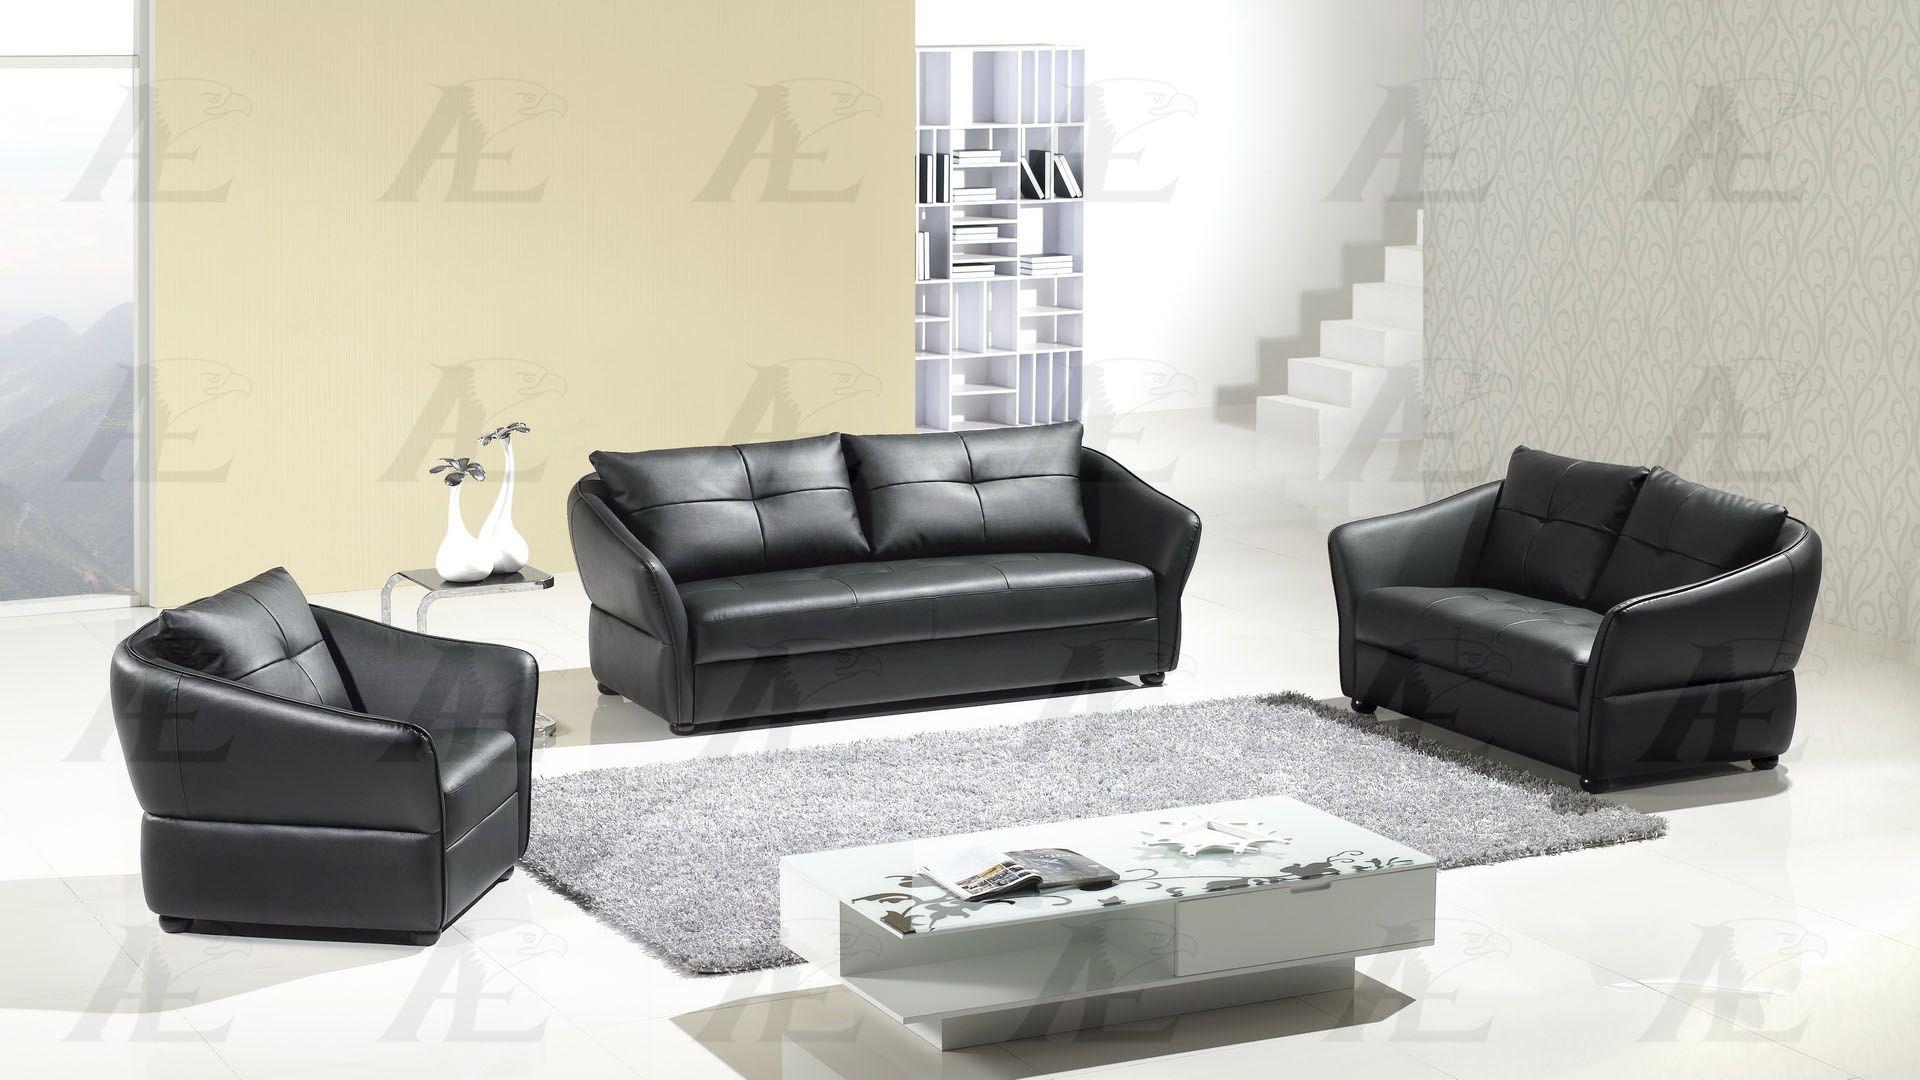 

                    
American Eagle Furniture AE348-BK Sofa Black Faux Leather Purchase 
